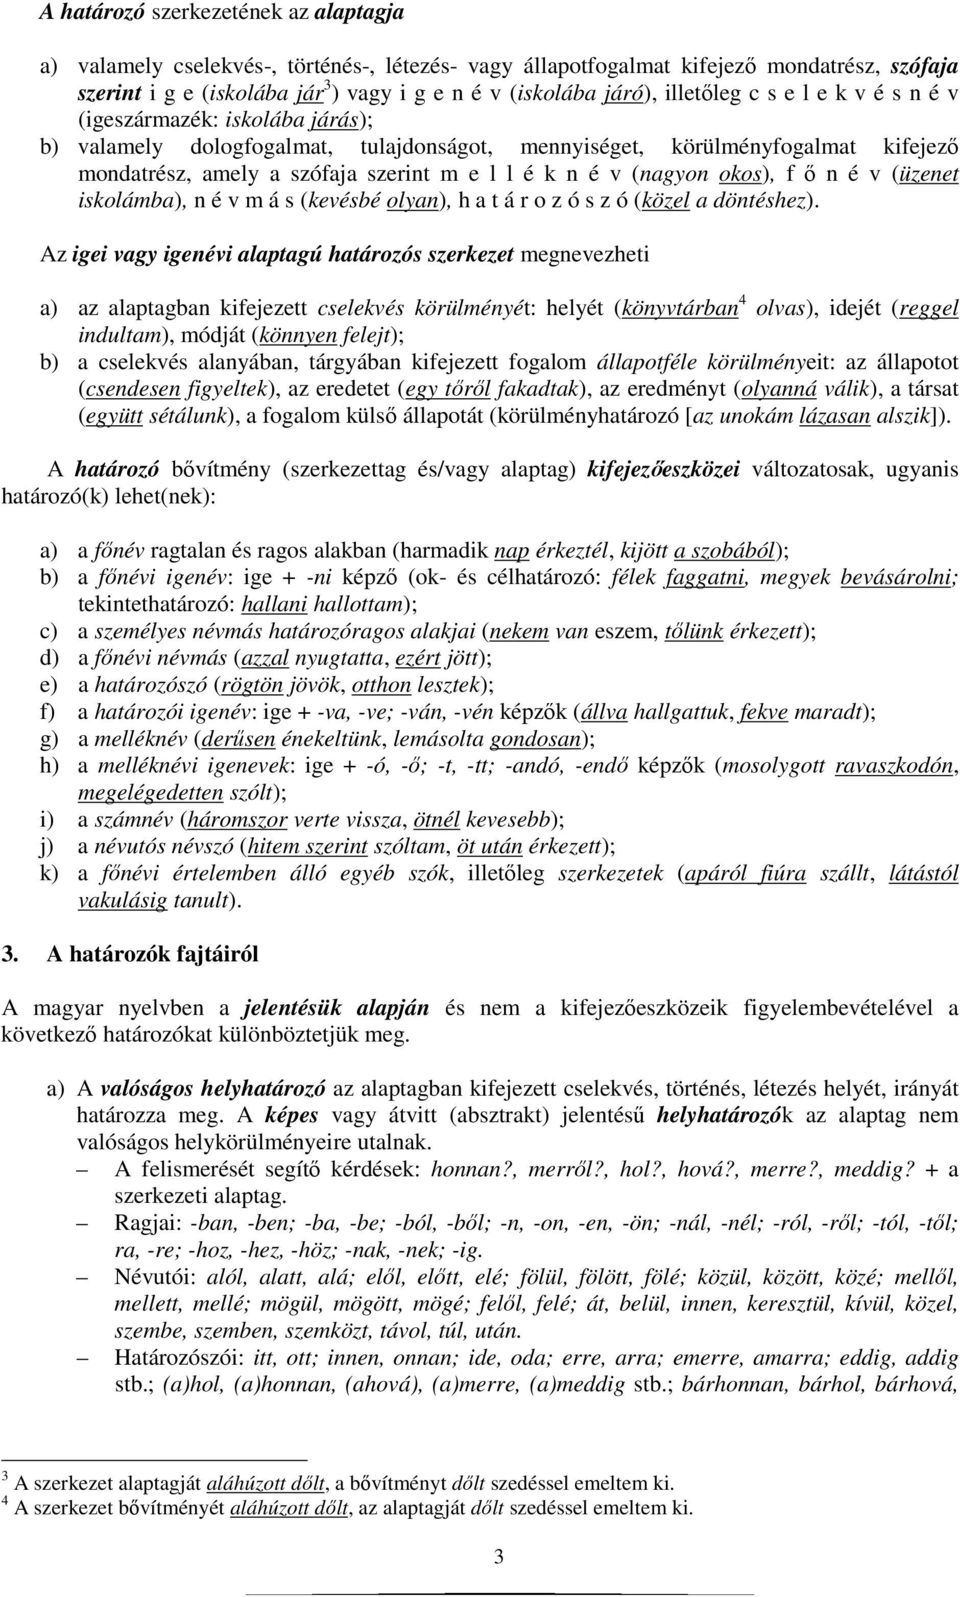 Közelebb a magyar nyelv határozóinak a megismeréséhez és kutatásához - PDF  Ingyenes letöltés